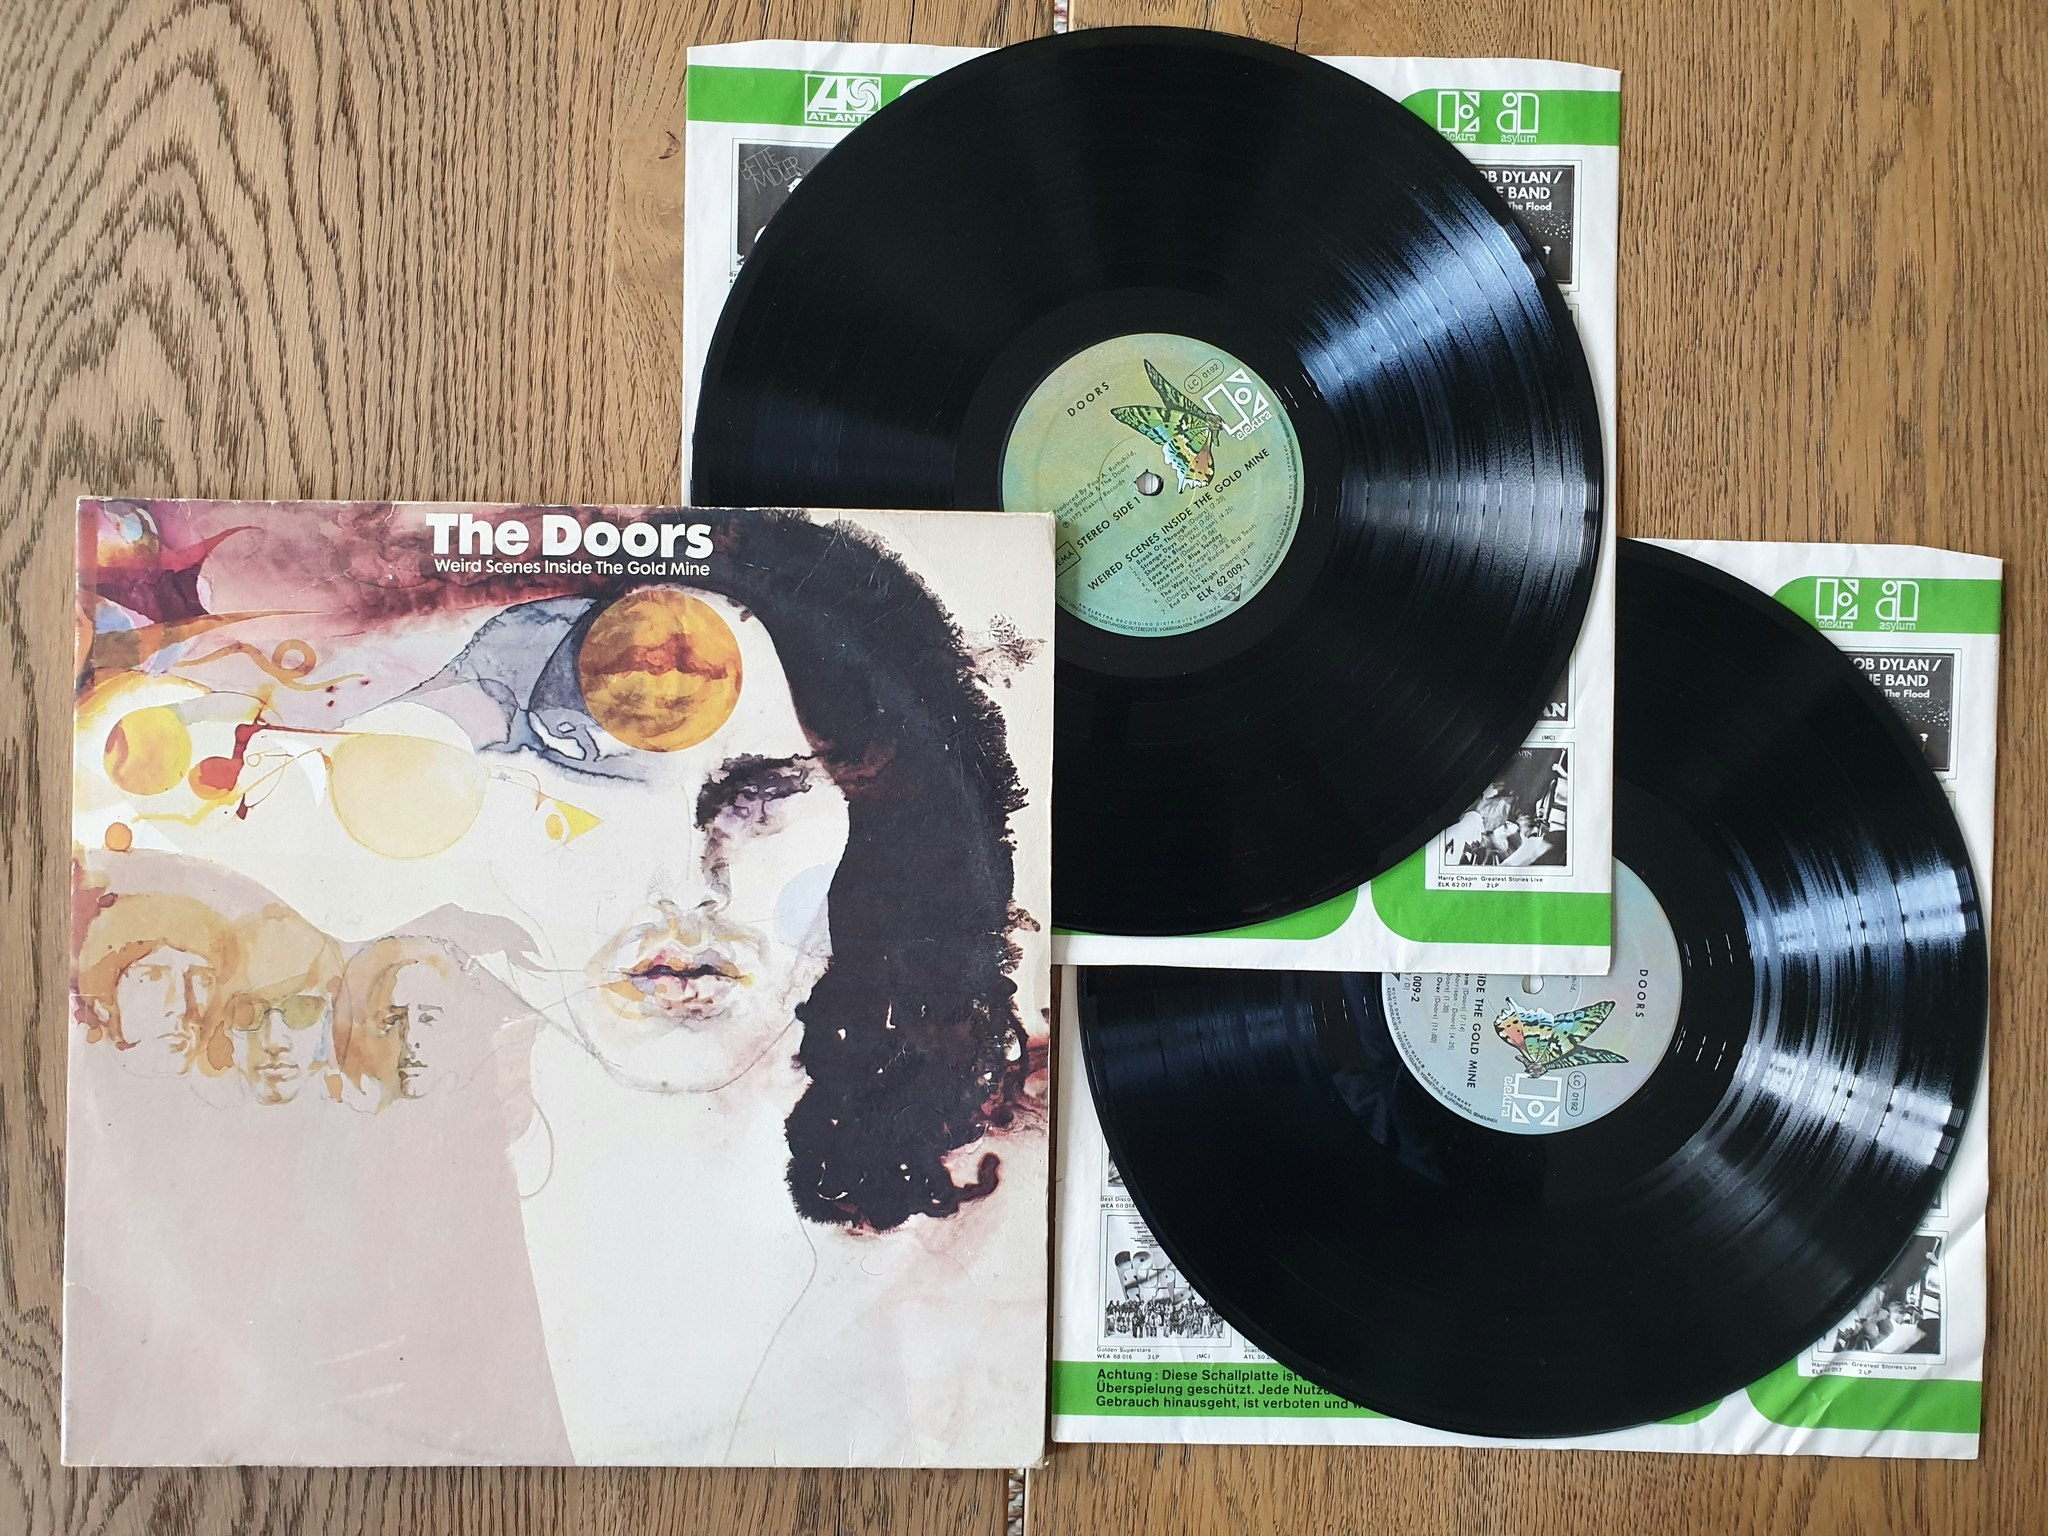 The Doors, Weird scenes inside the gold mine. Vinyl 2LP